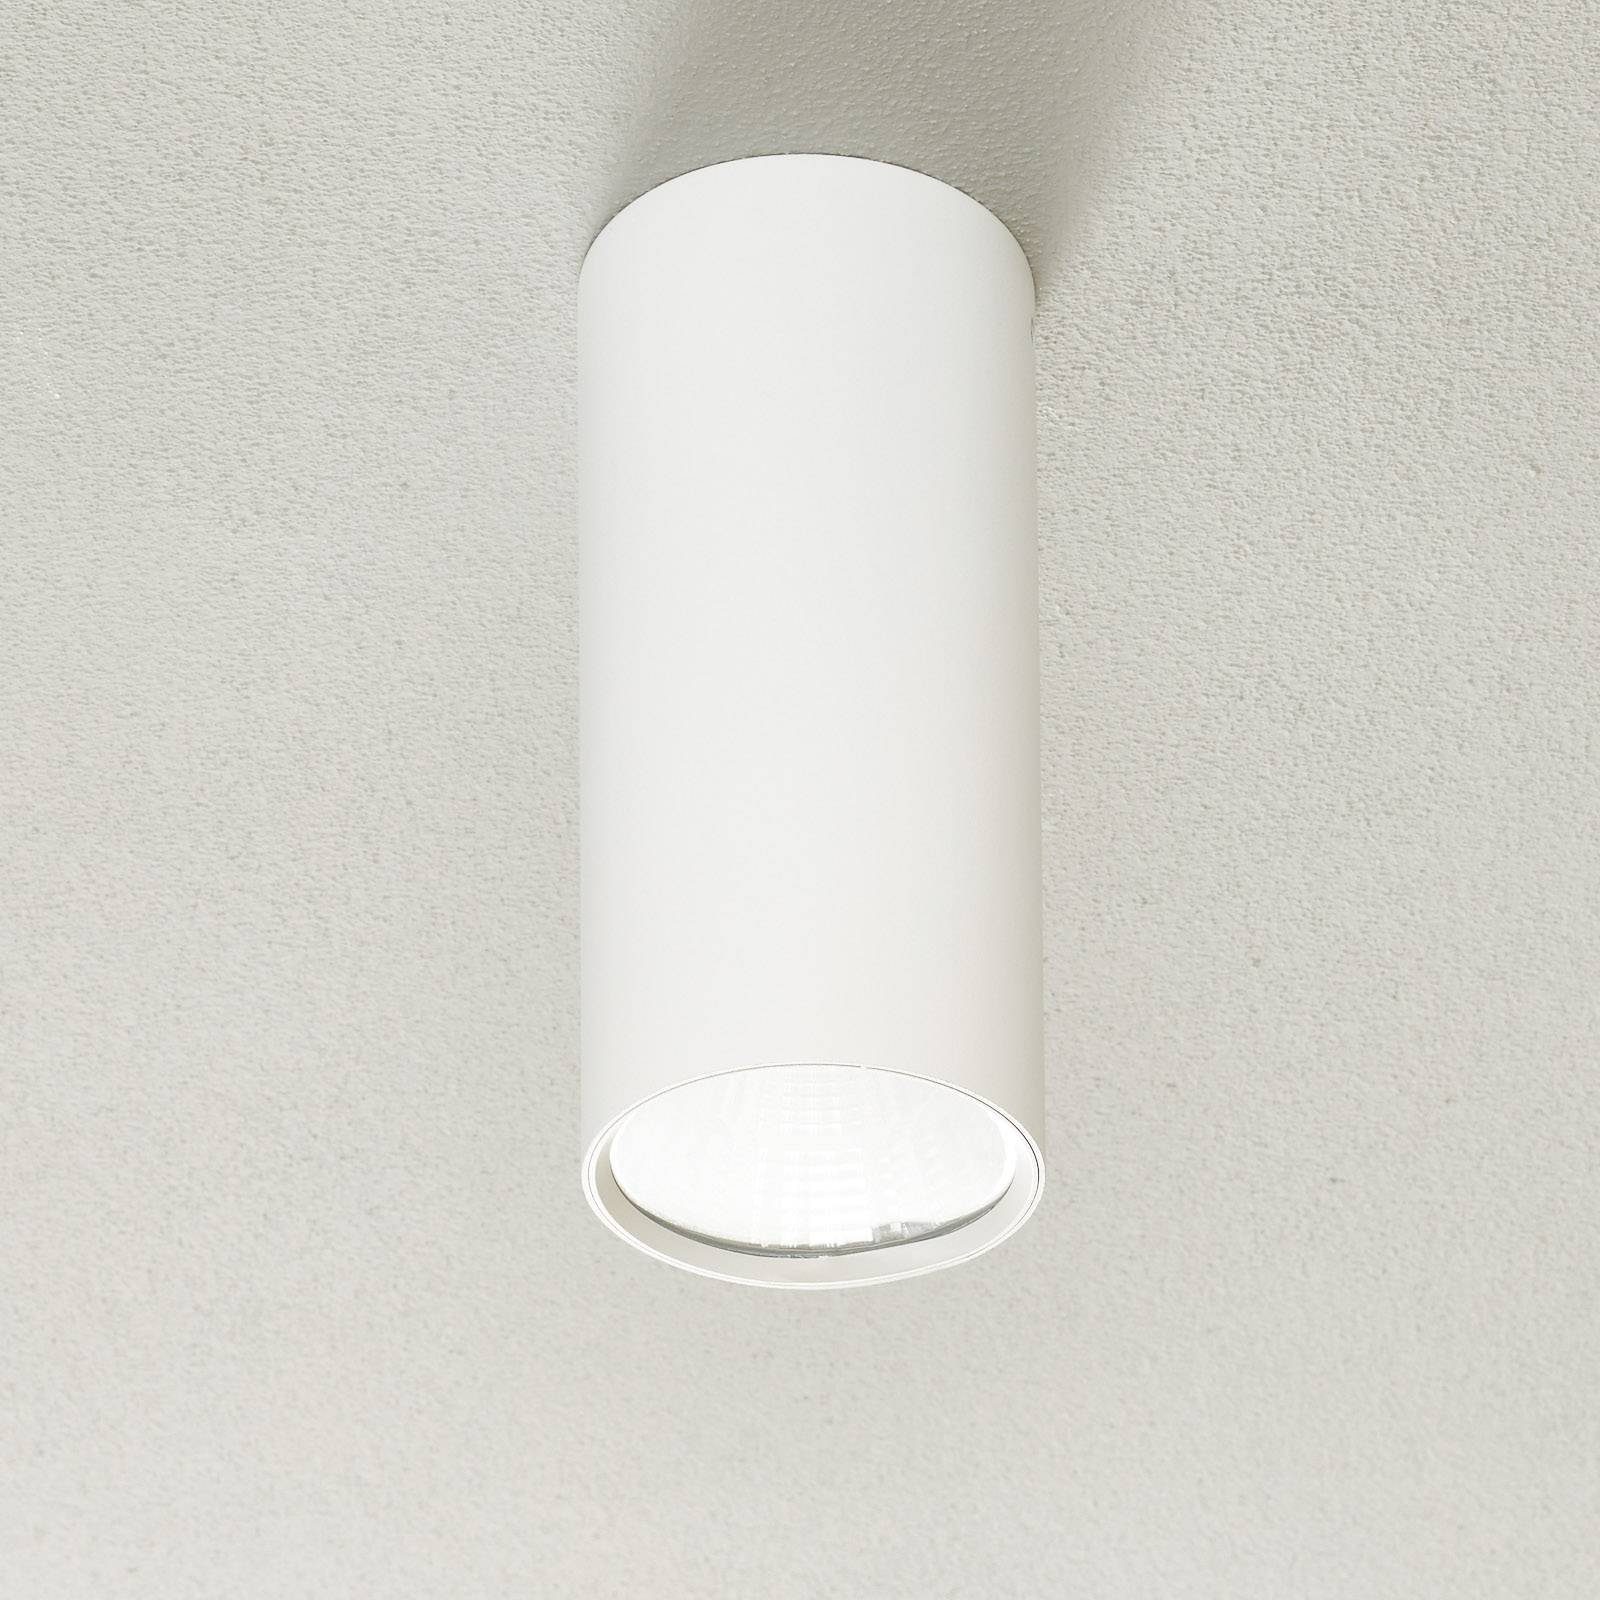 Lucande Deckenspots Takio, LED-Lampen, warmweiß, Modern, Stahl, weiß, 1  flammig, inkl. Leuchtmittel, Deckenleuchte | Deckenstrahler